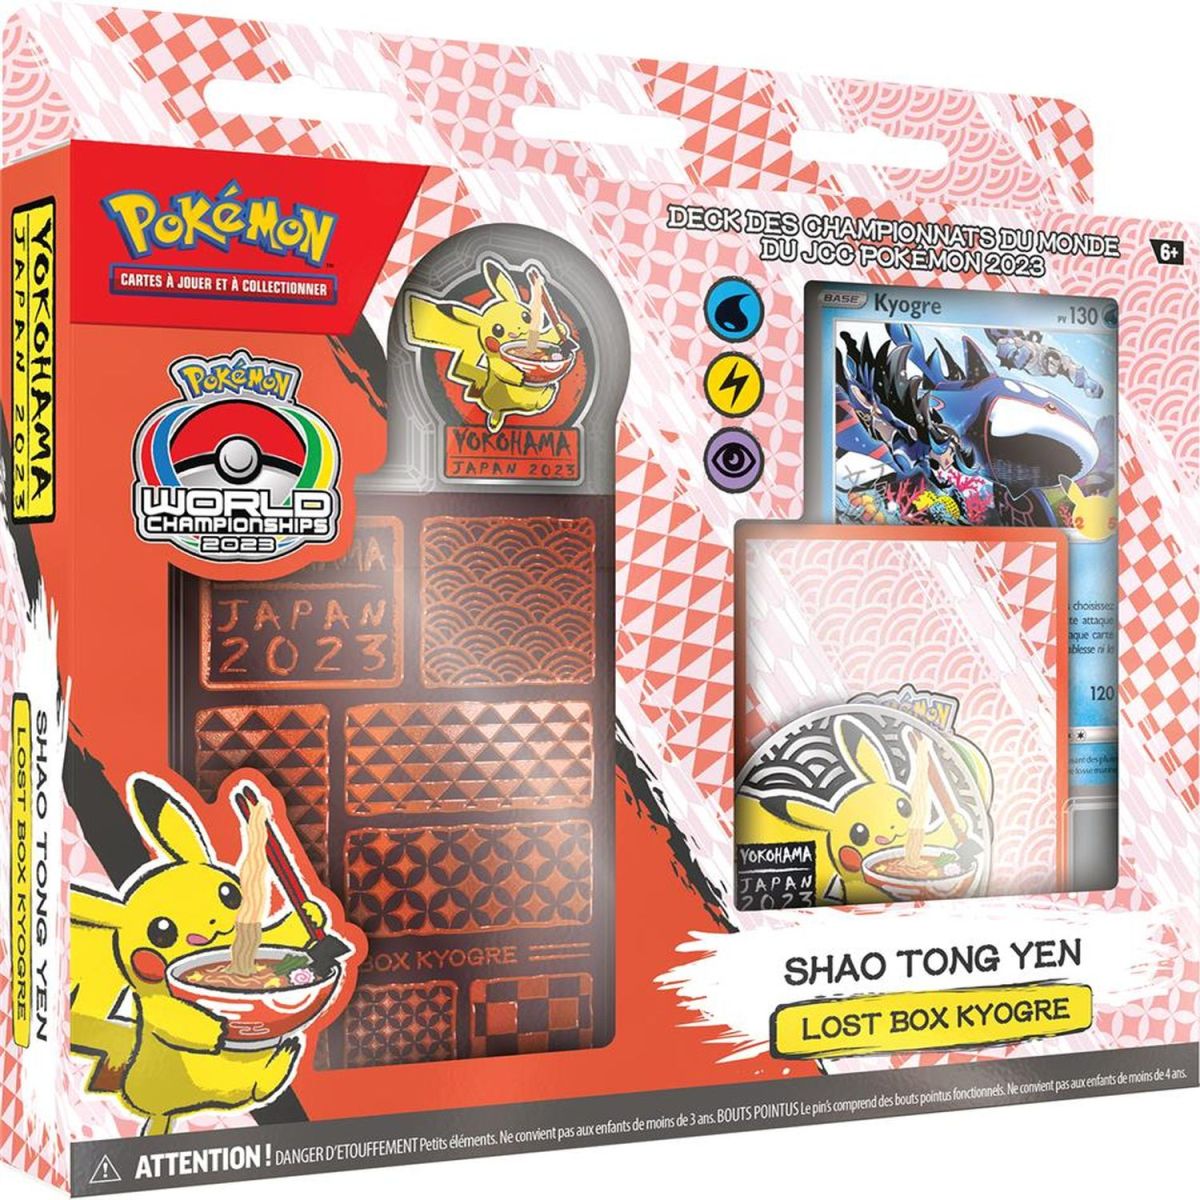 Pokémon - Deck des championnats du monde 2023 - Kyogre -  "Lost Box Kyogre" - FR